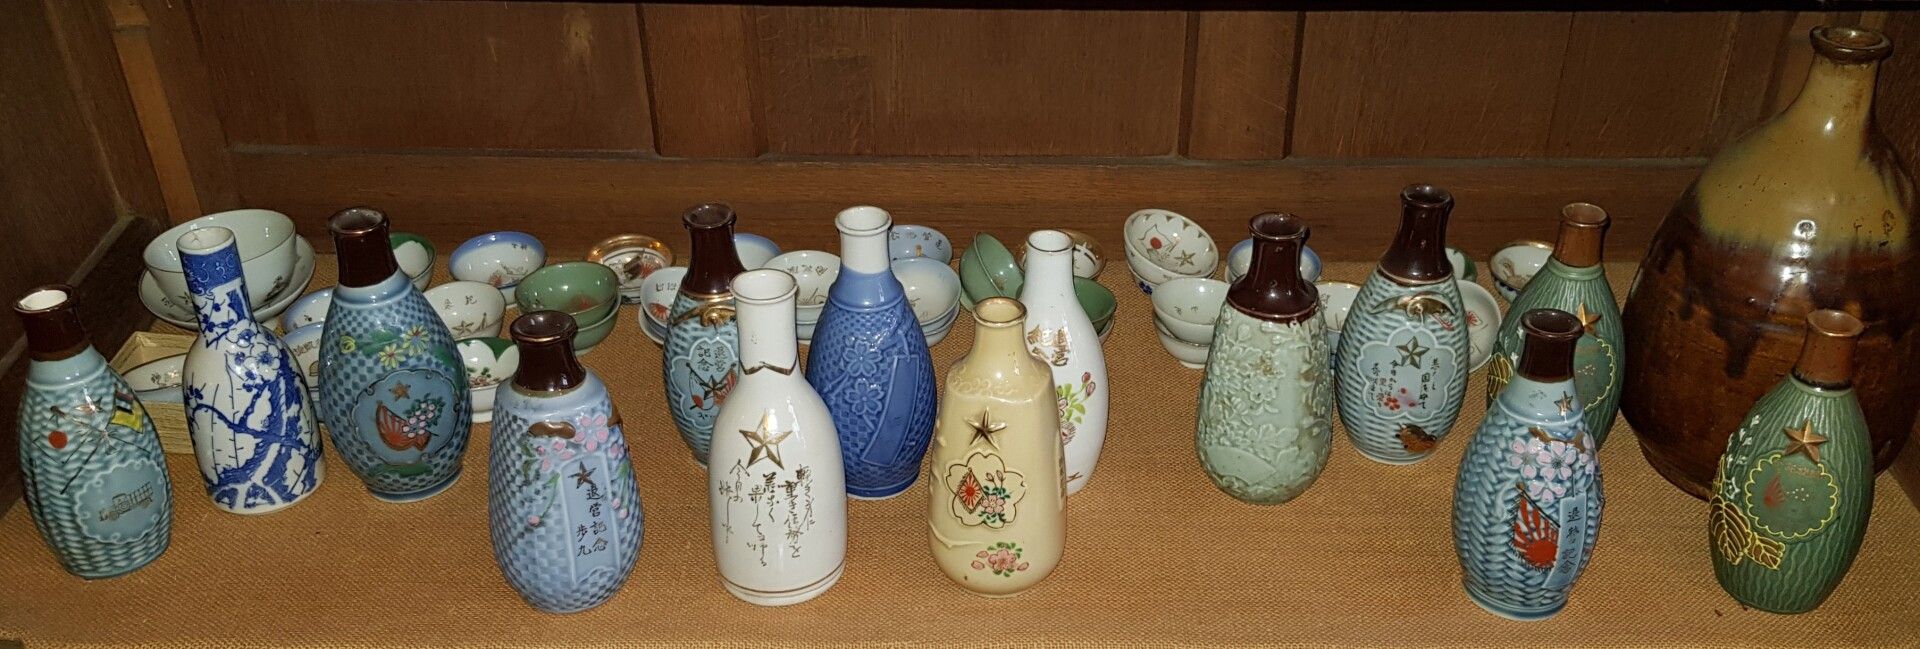 Null Muchas botellas y vasos de sake, en porcelana o gres.



Nos unimos allí:

&hellip;